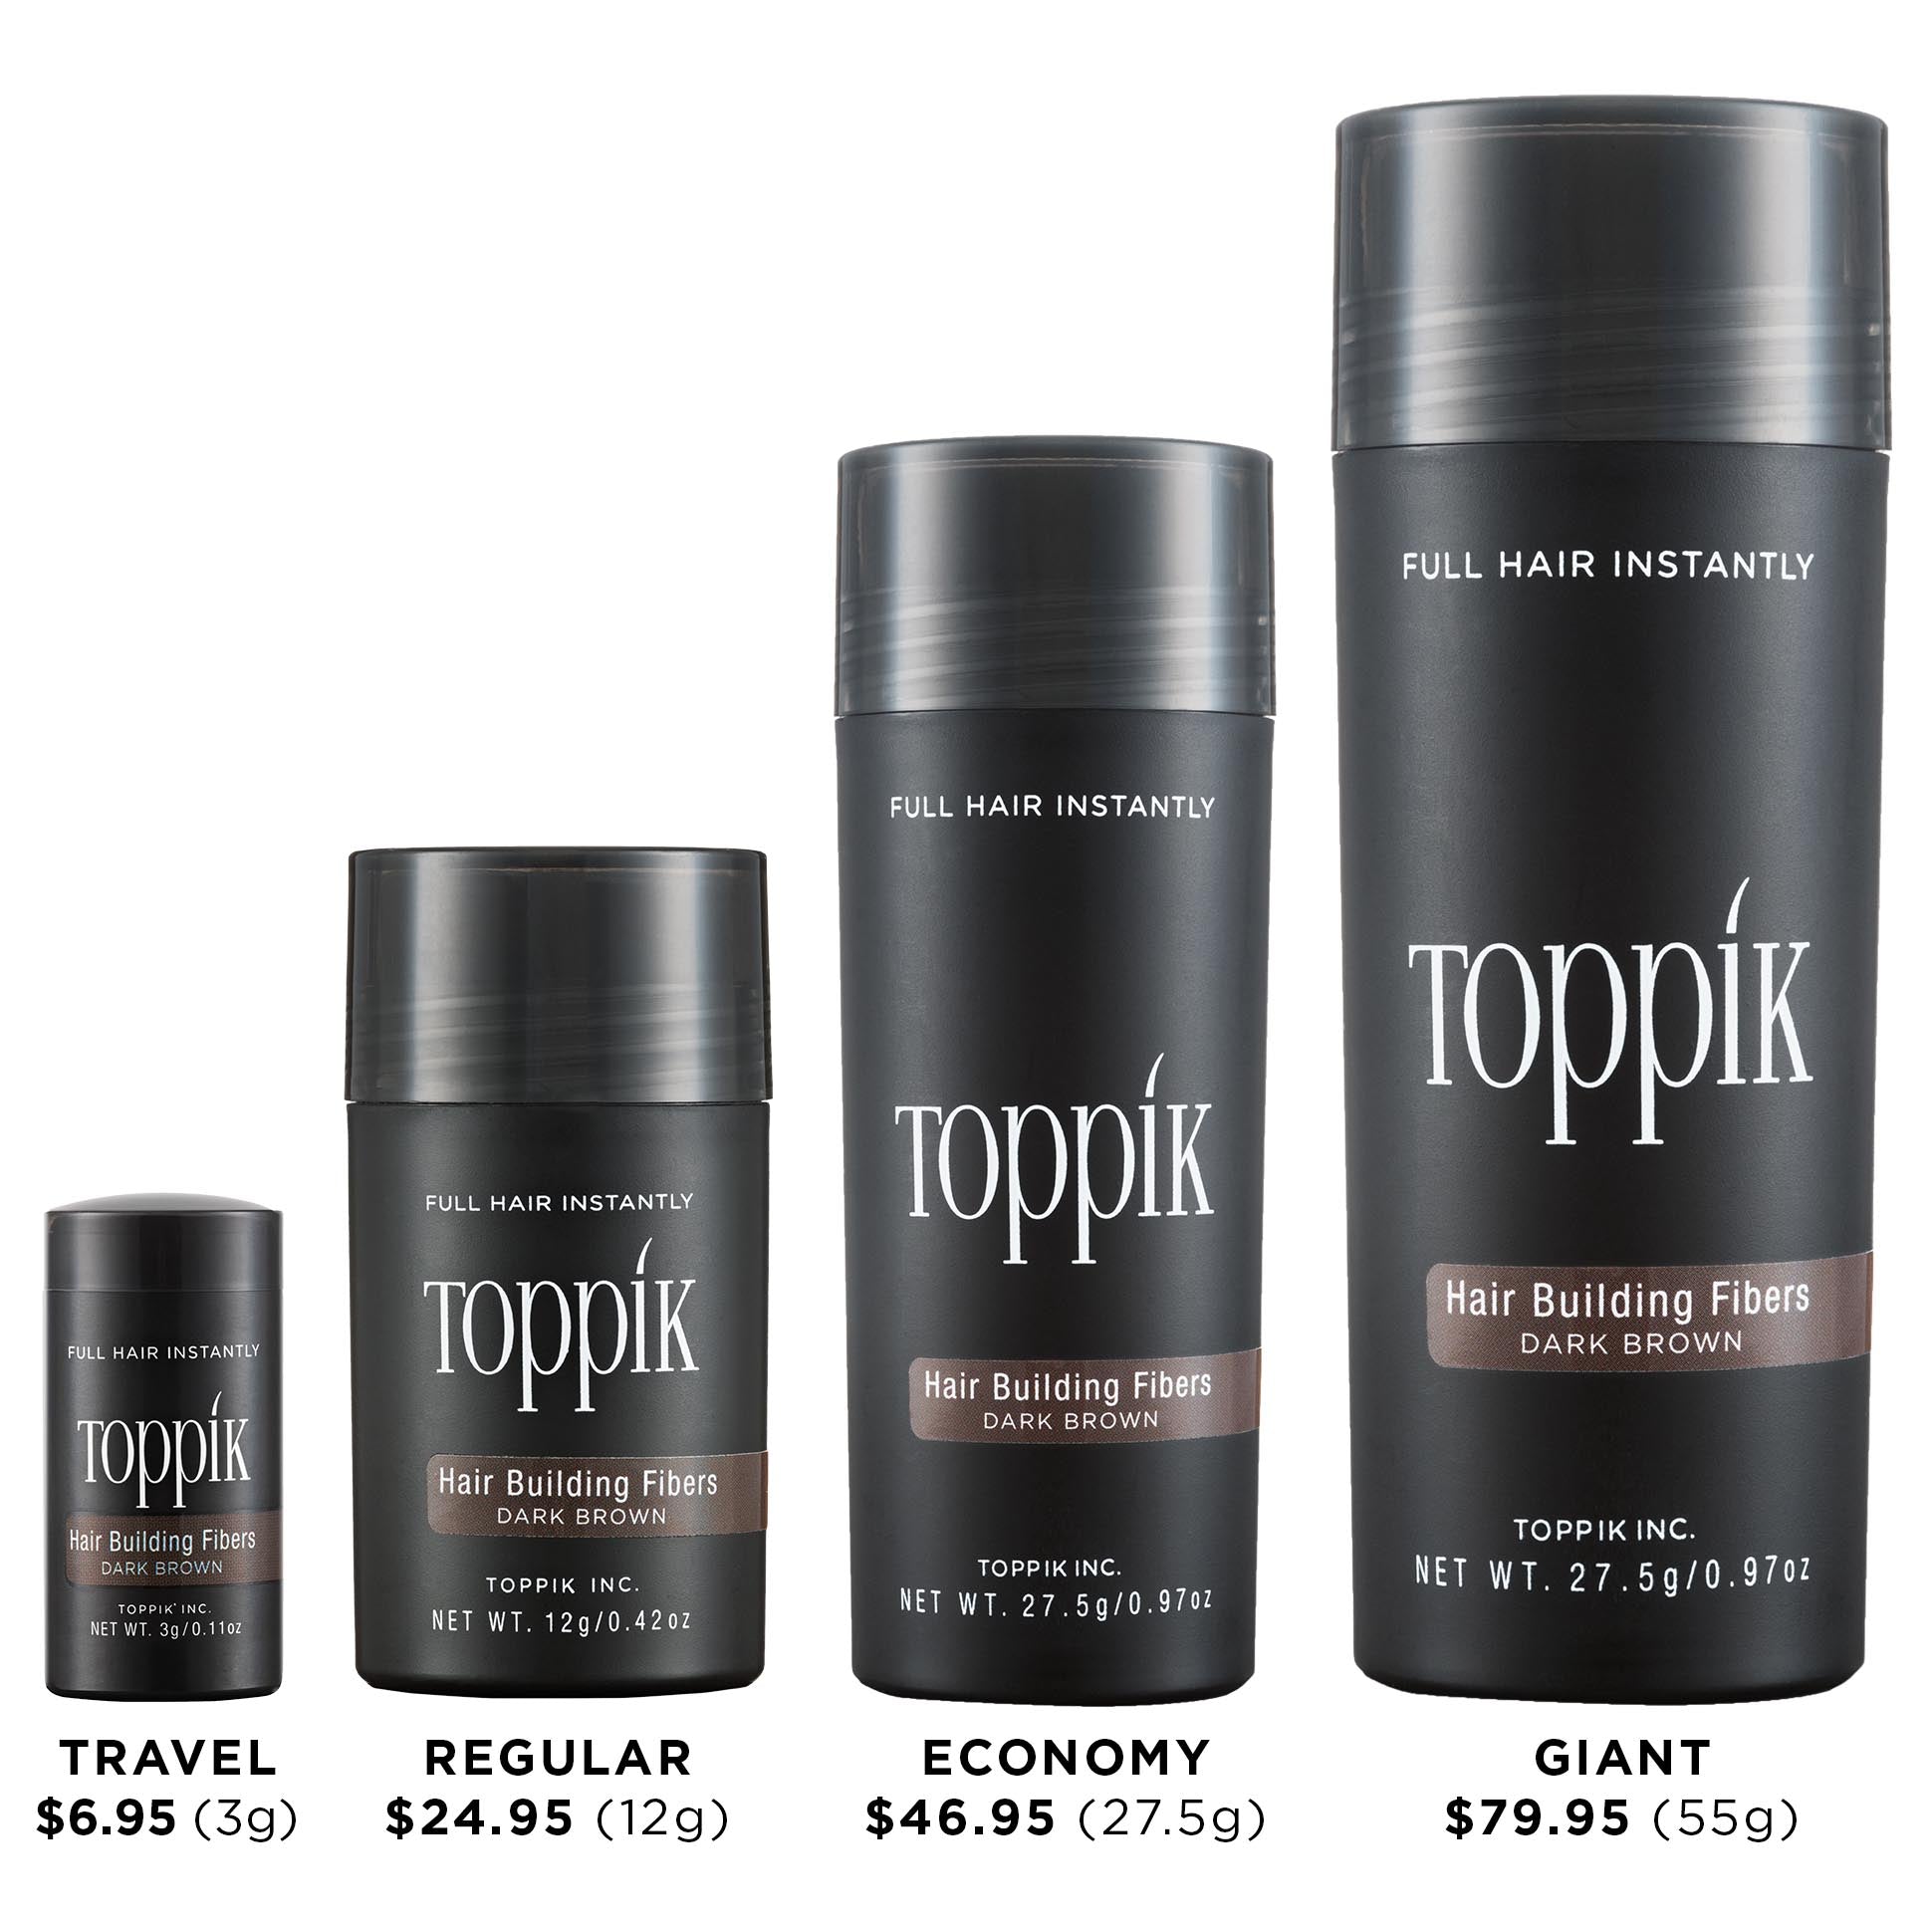 How to Apply Toppik Hair Fibers - Toppik Blog